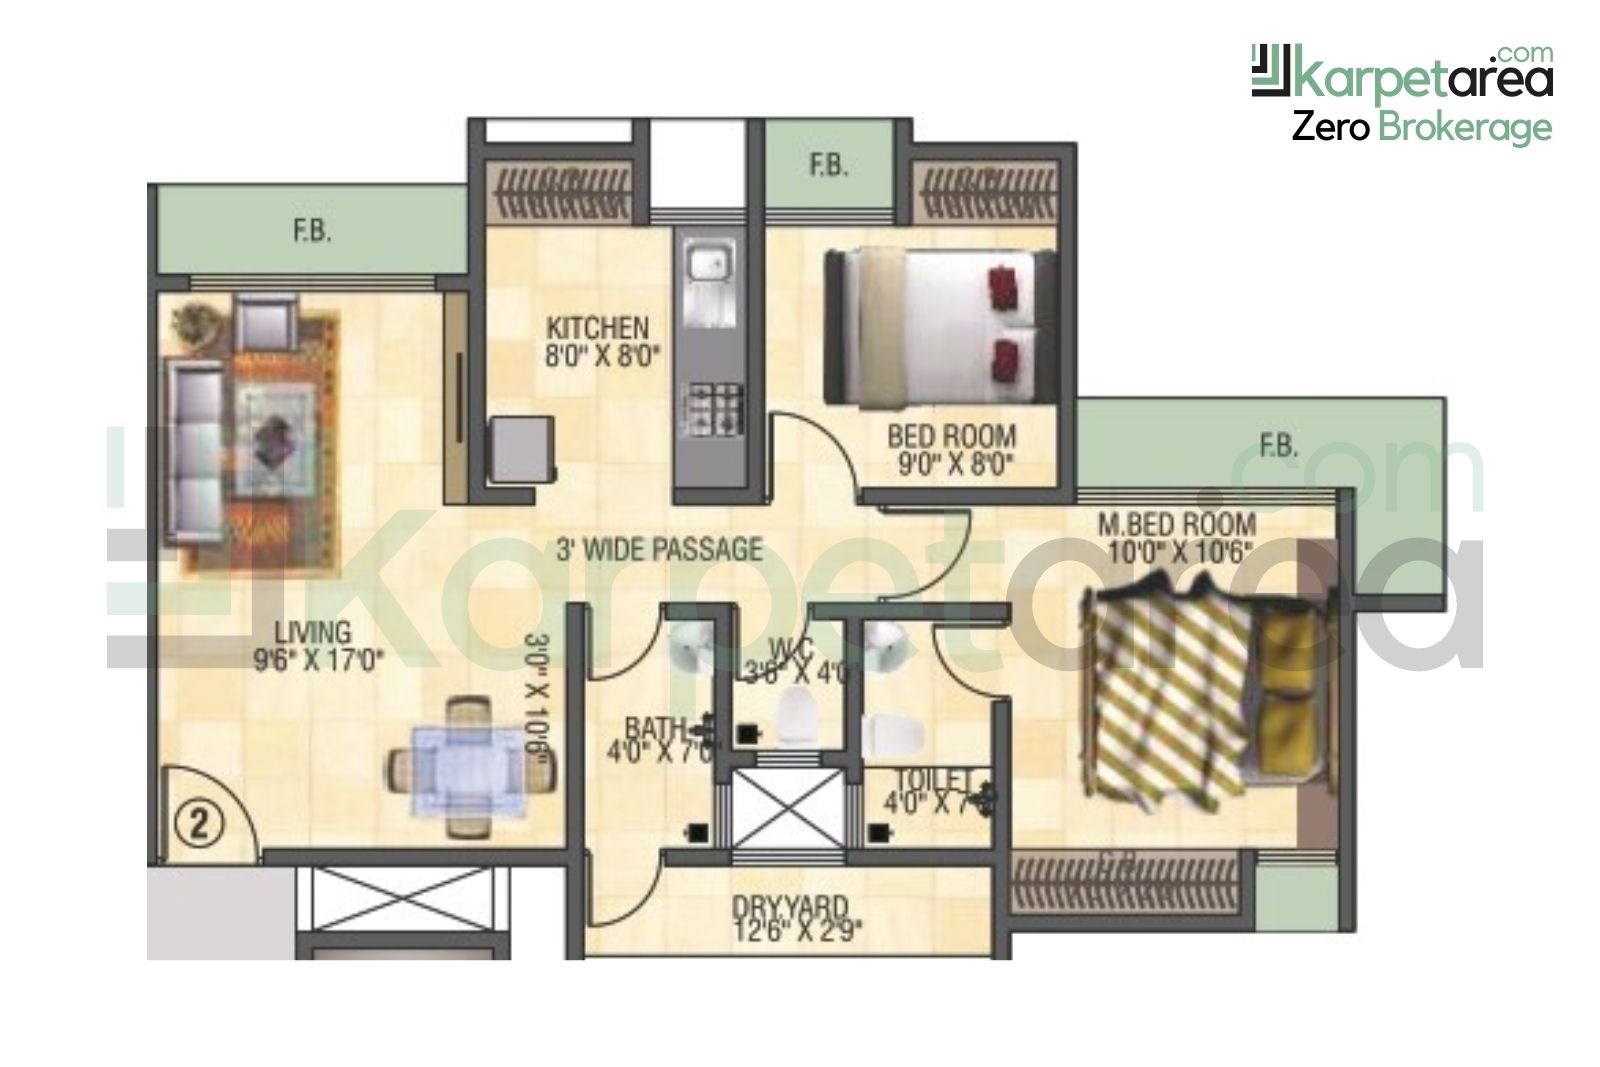 2 BHK Apartments Layout at Vista Valley near Sukoon Heights in Kausa, Mumbra, Thane 400612